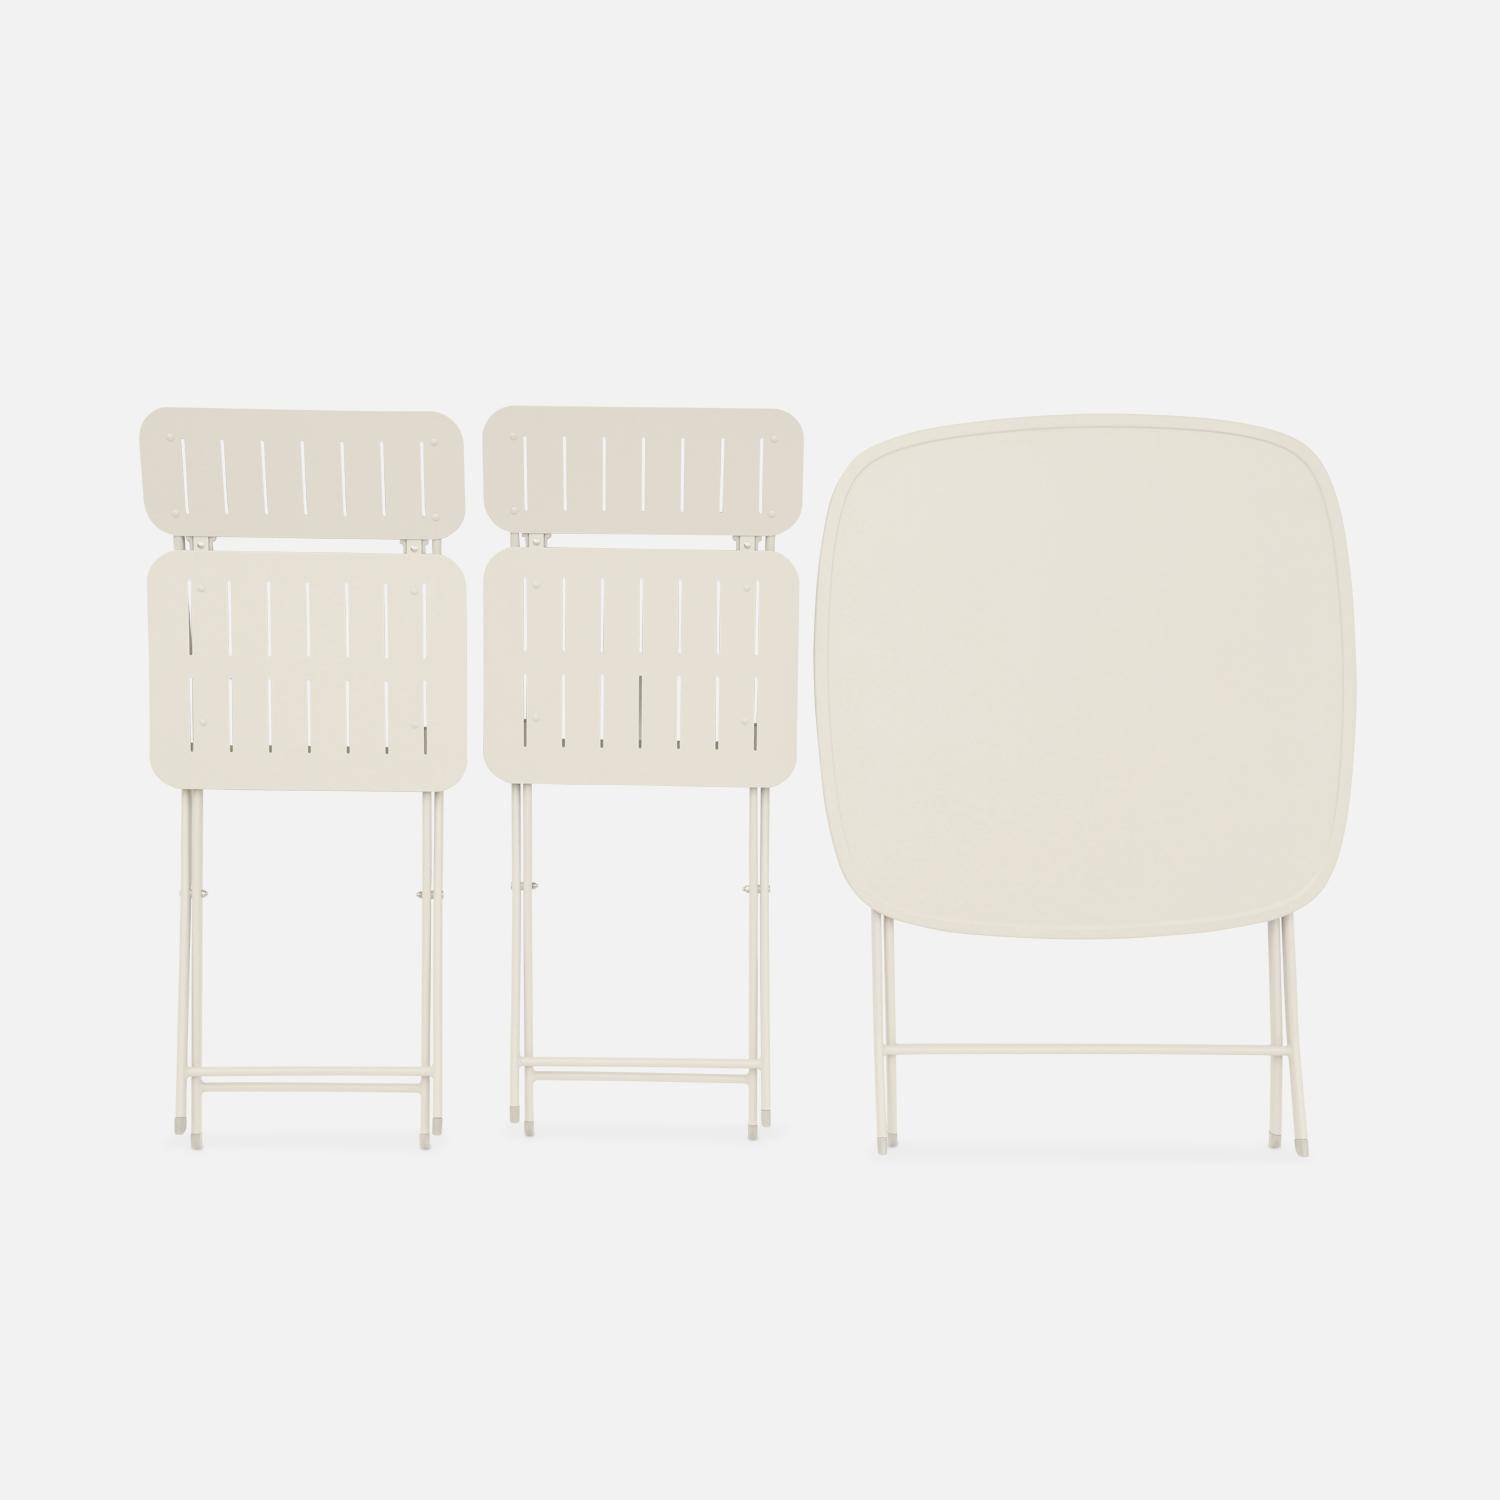 Mesa de jardín plegable tipo bistrot de color blanco roto con 2 sillas plegables de acero galvanizado resistente Photo4